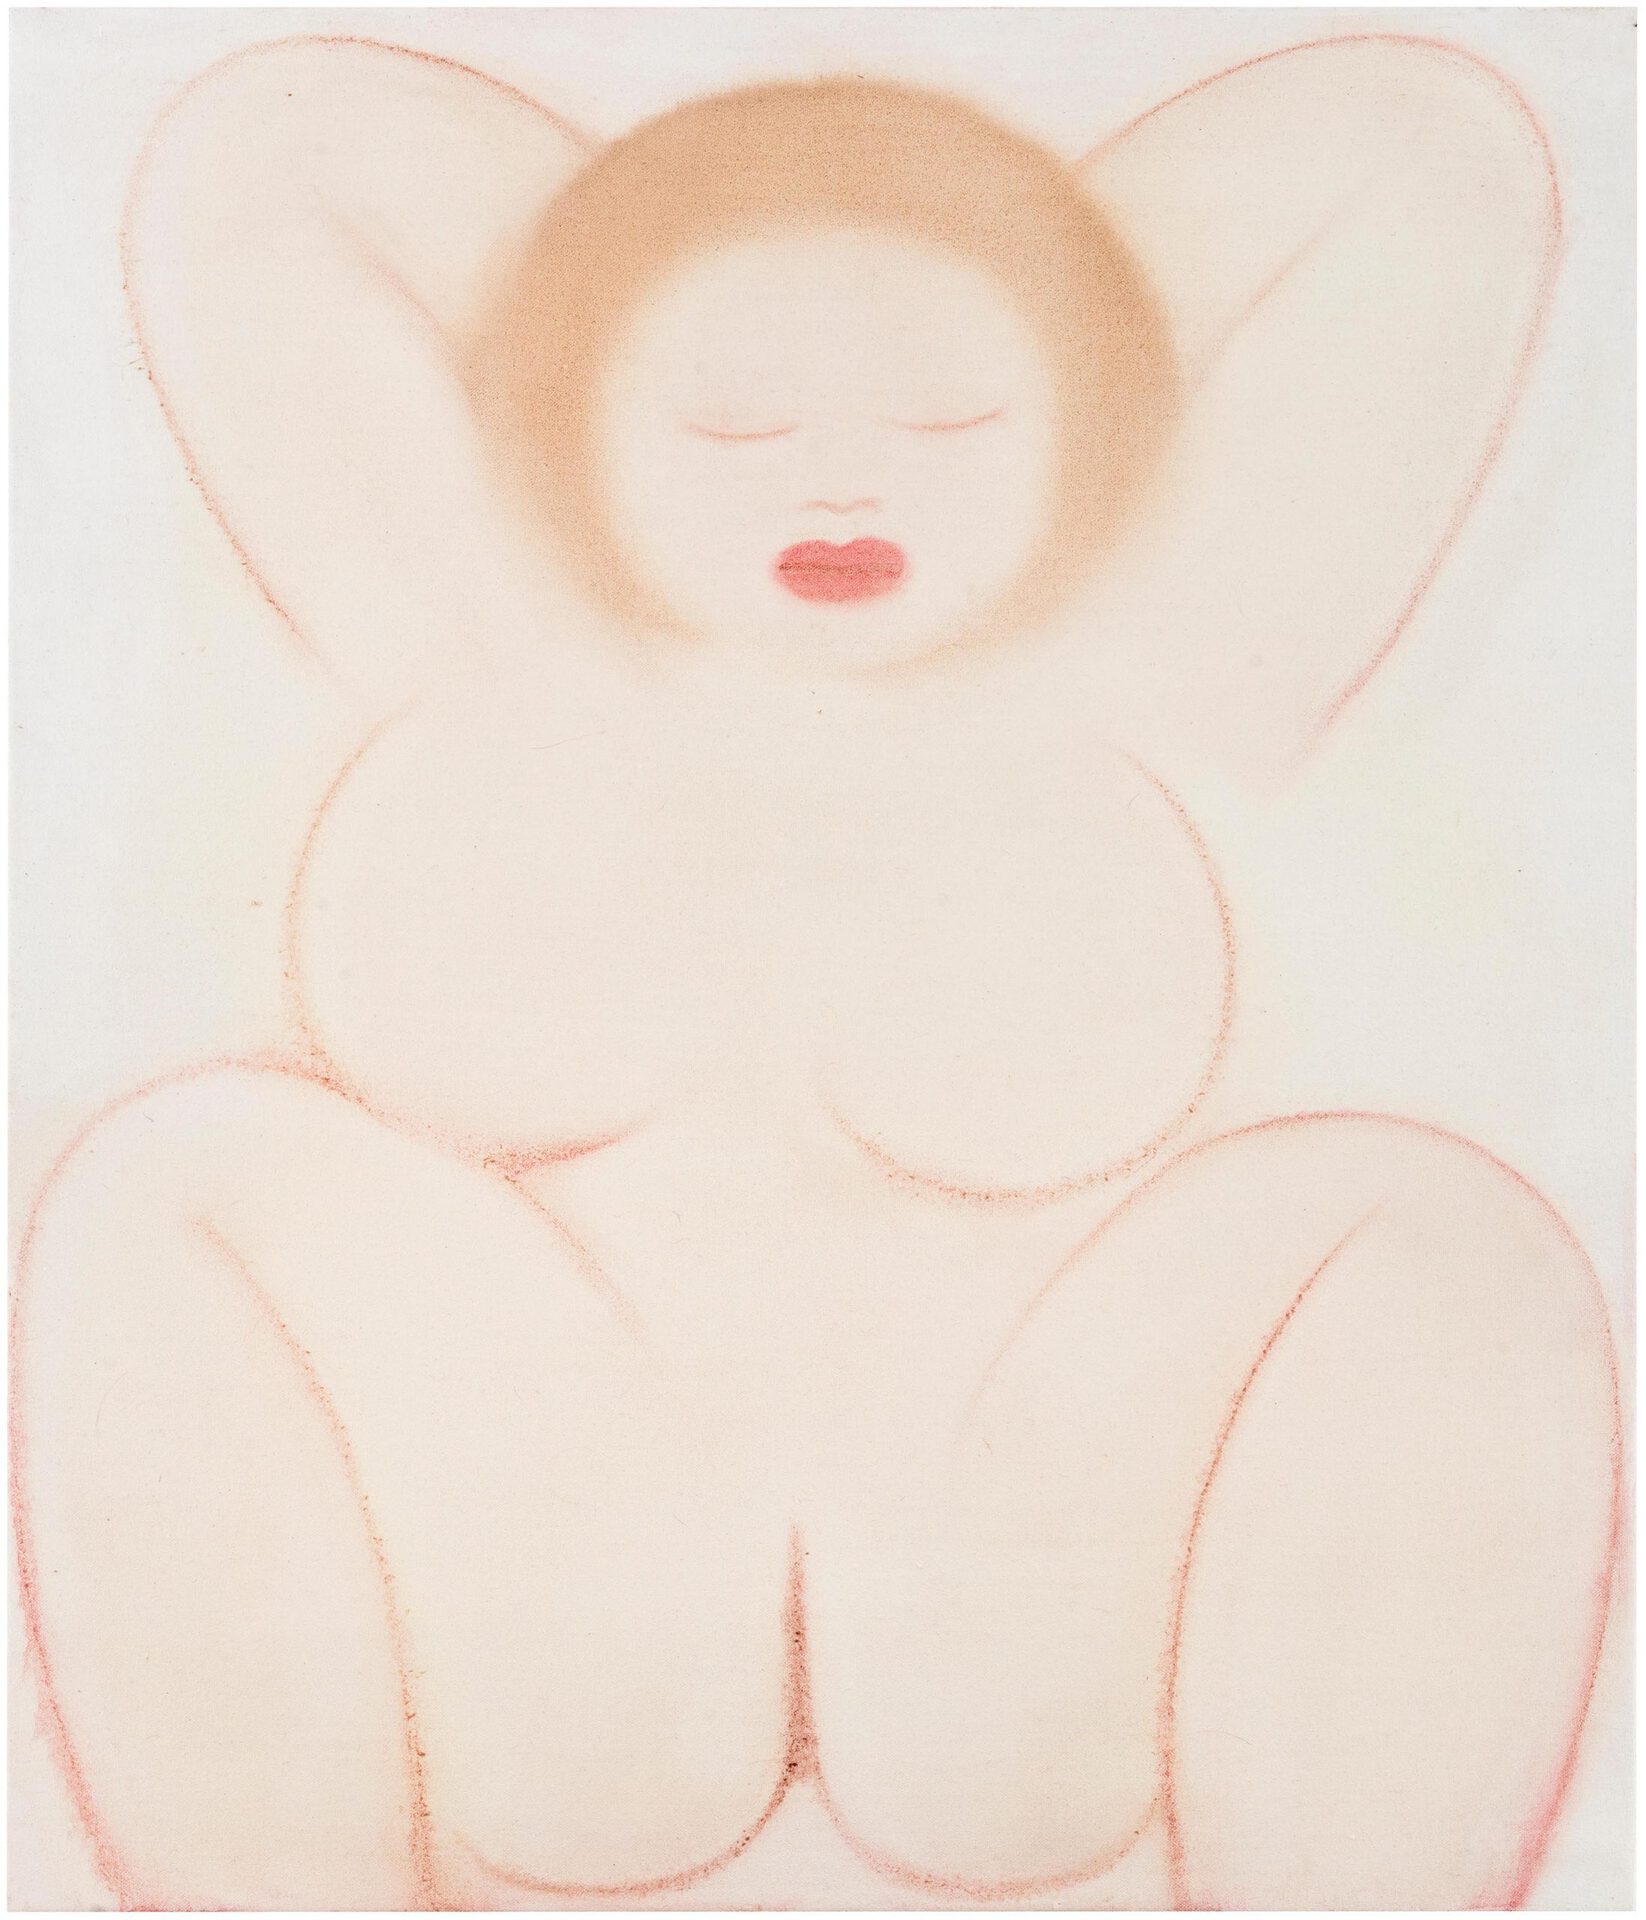 Mari Sunna, Bath, 2020, oil on canvas, 75 x 65 cm